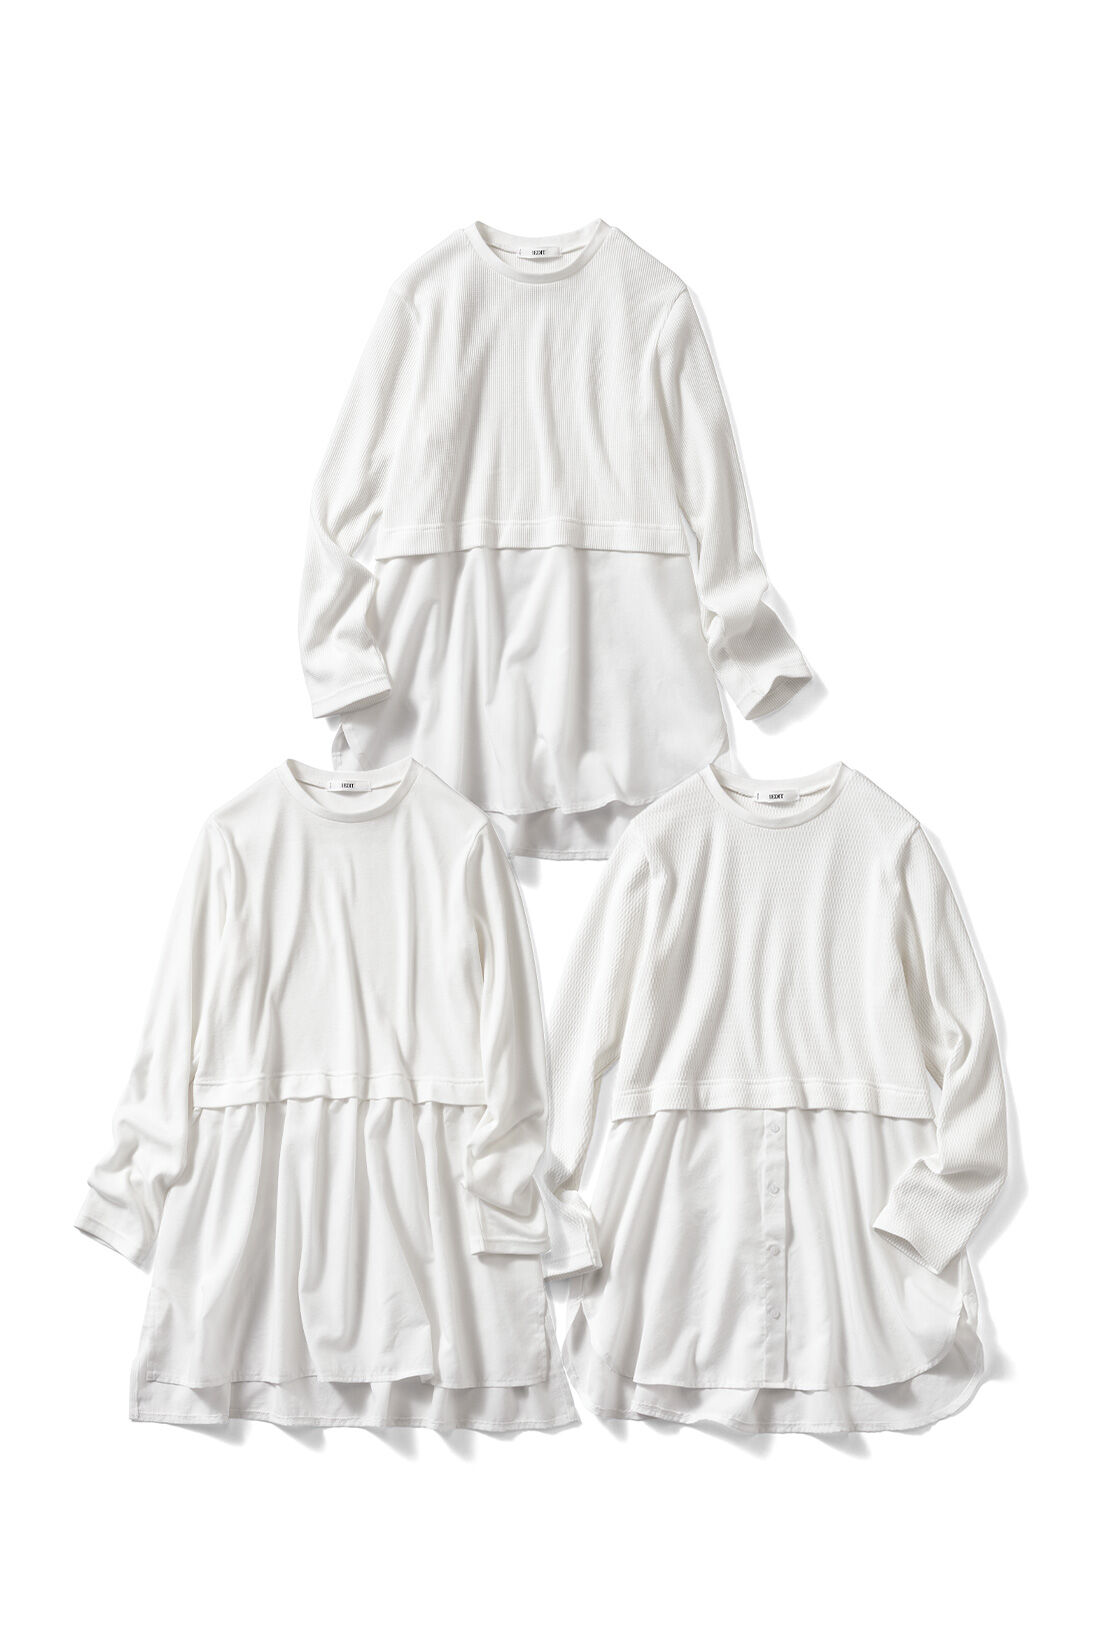 IEDIT|IEDIT[イディット]　レイヤードで体形カバーもかなう すそシャツデザインのホワイトロングカットソートップスの会